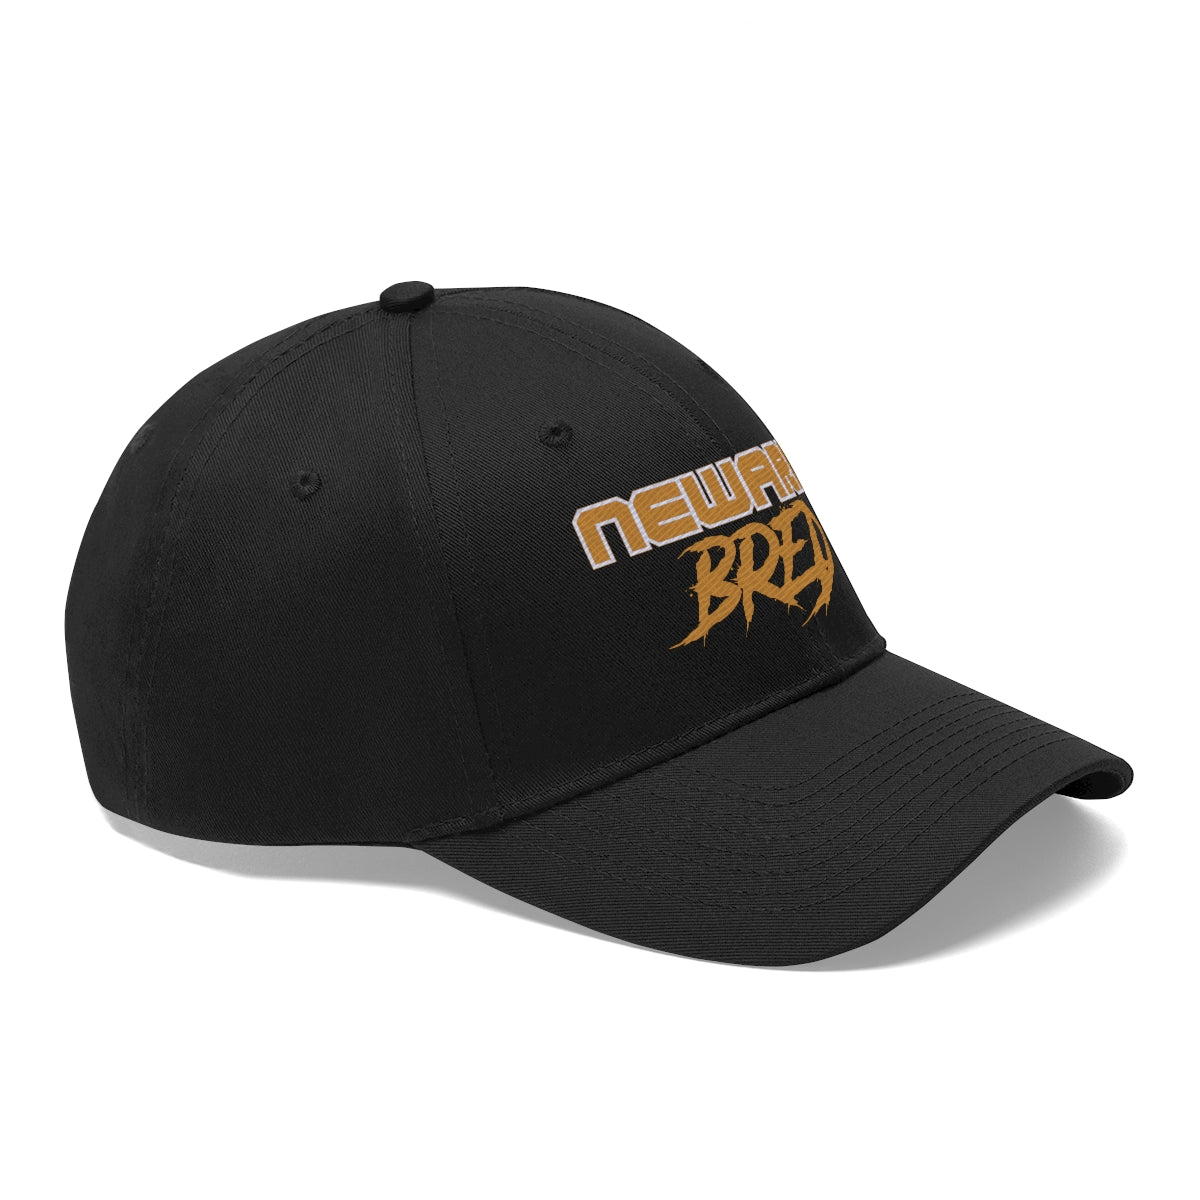 Newark Bred Unisex Twill Hat